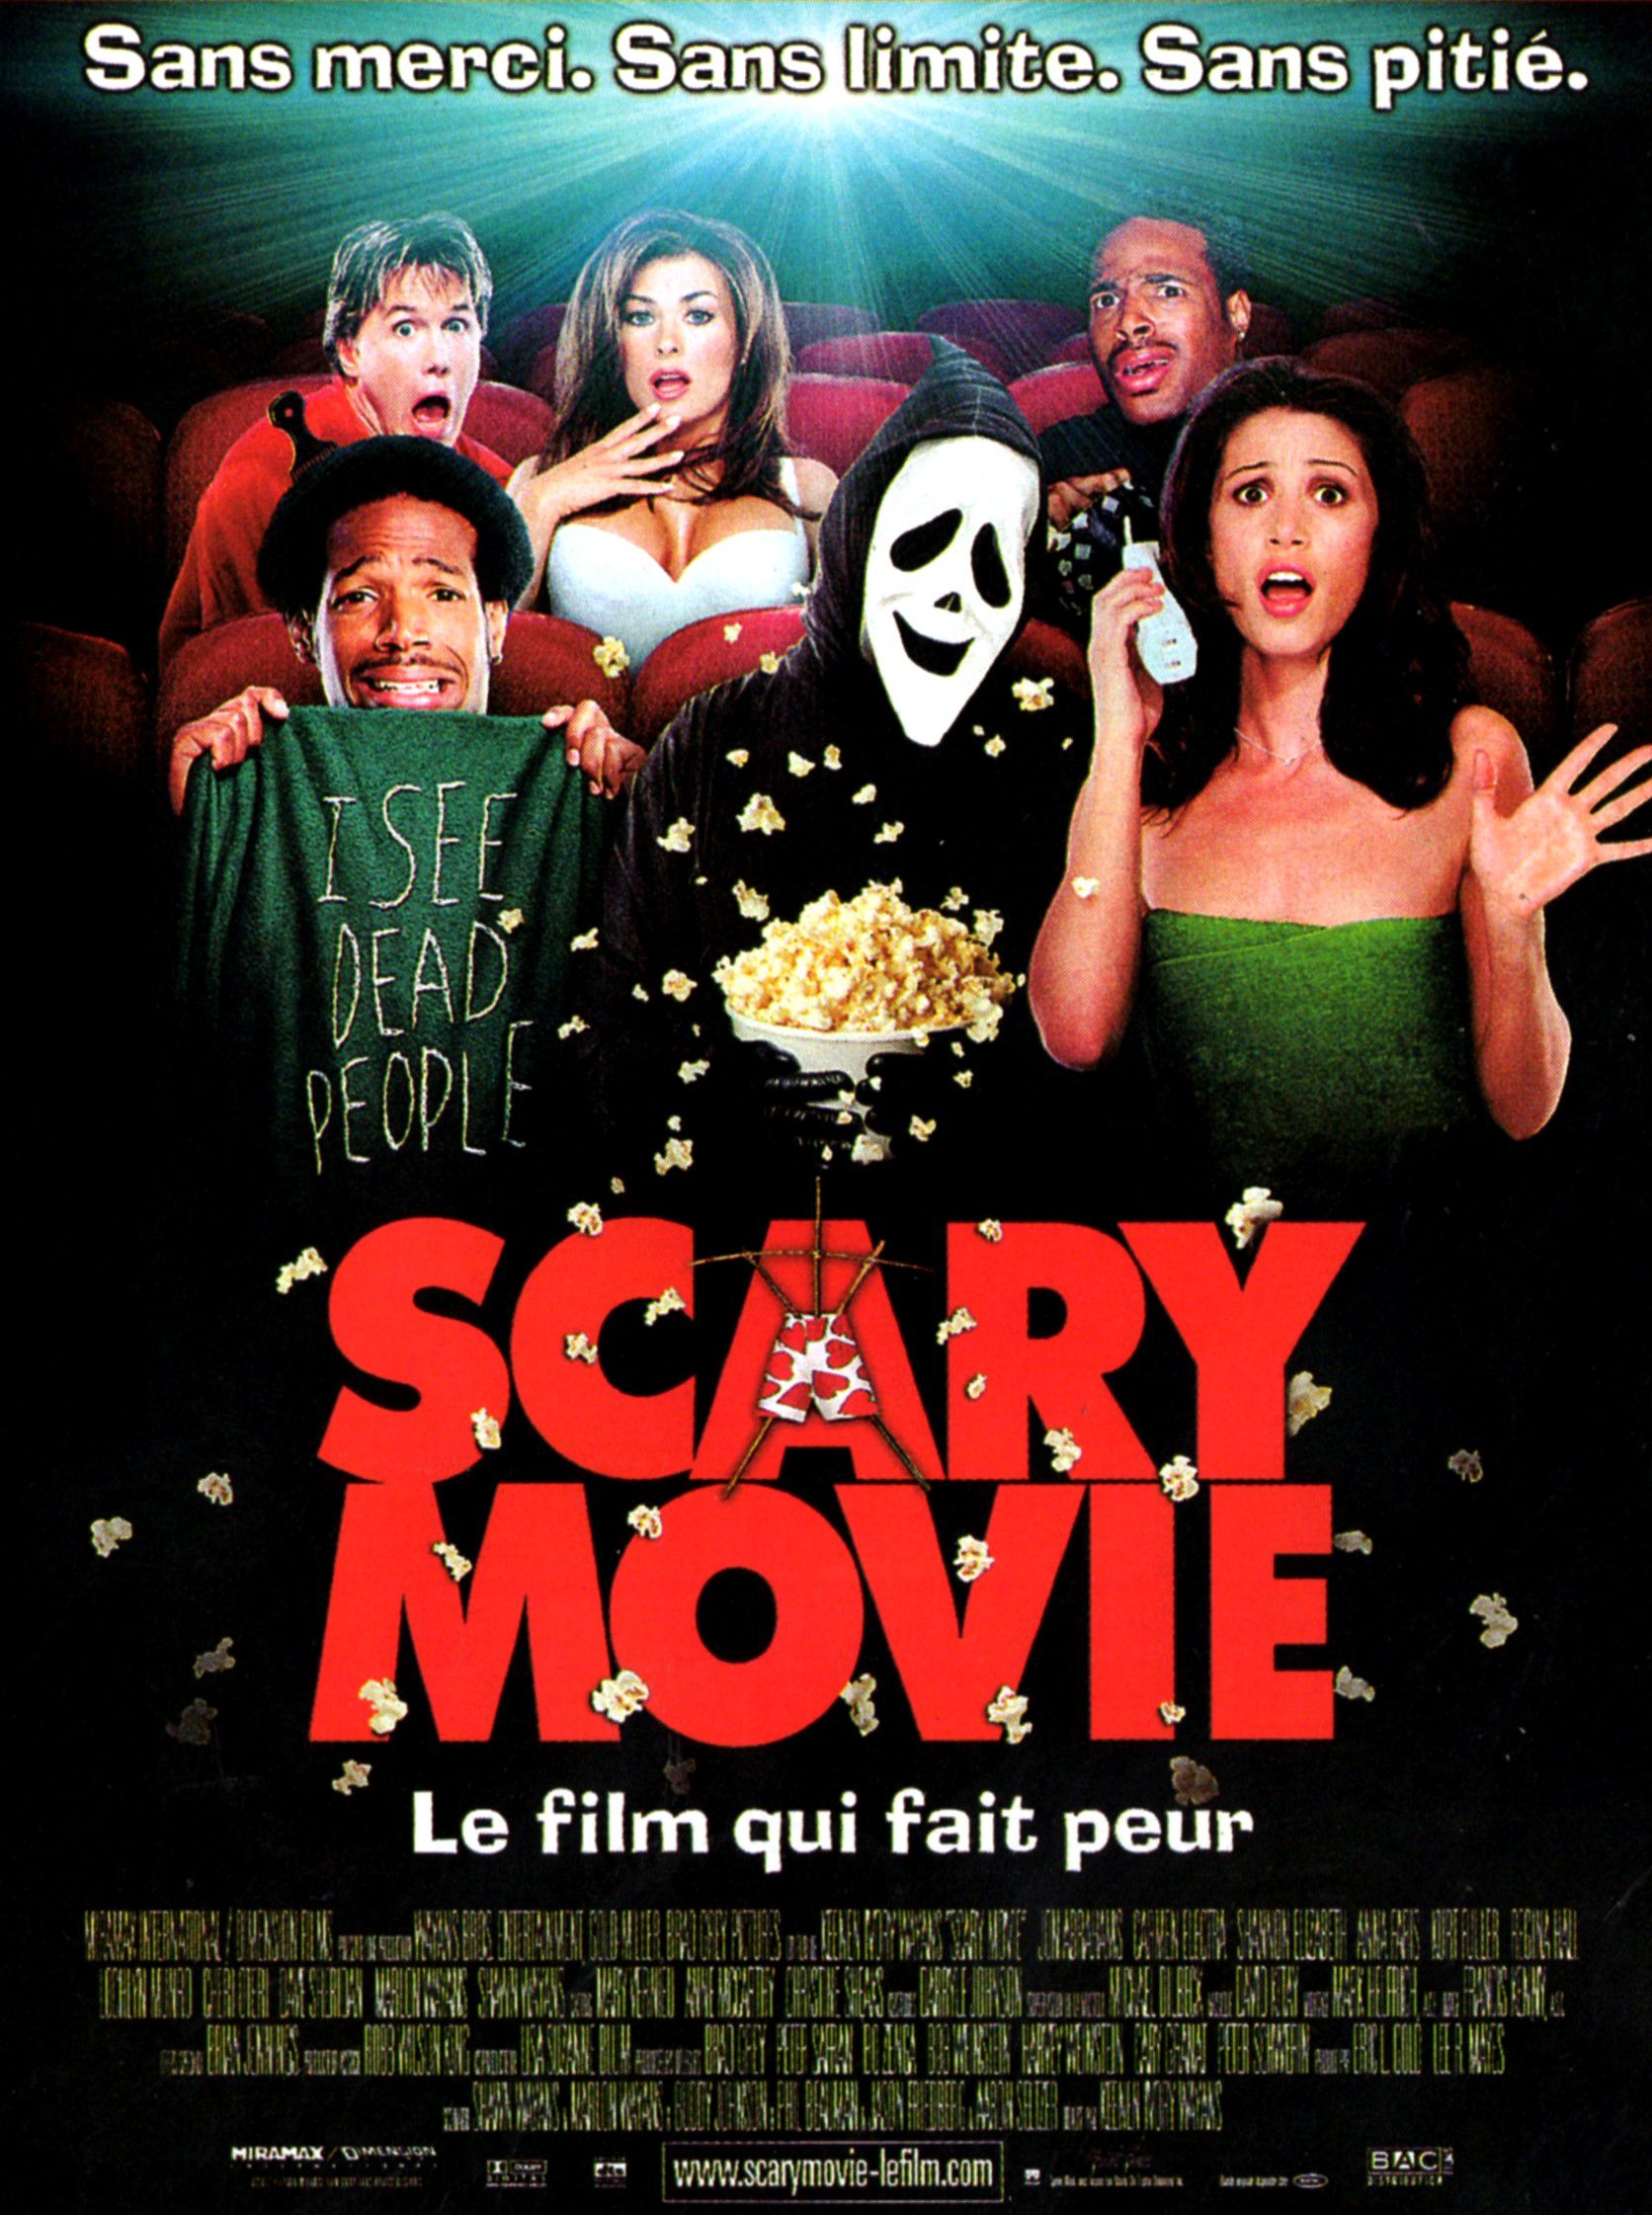 Phim Scary Movie 1 là bộ phim ma hài Mỹ mang đến ấn tượng cho người xem bởi chi tiết độc lạ